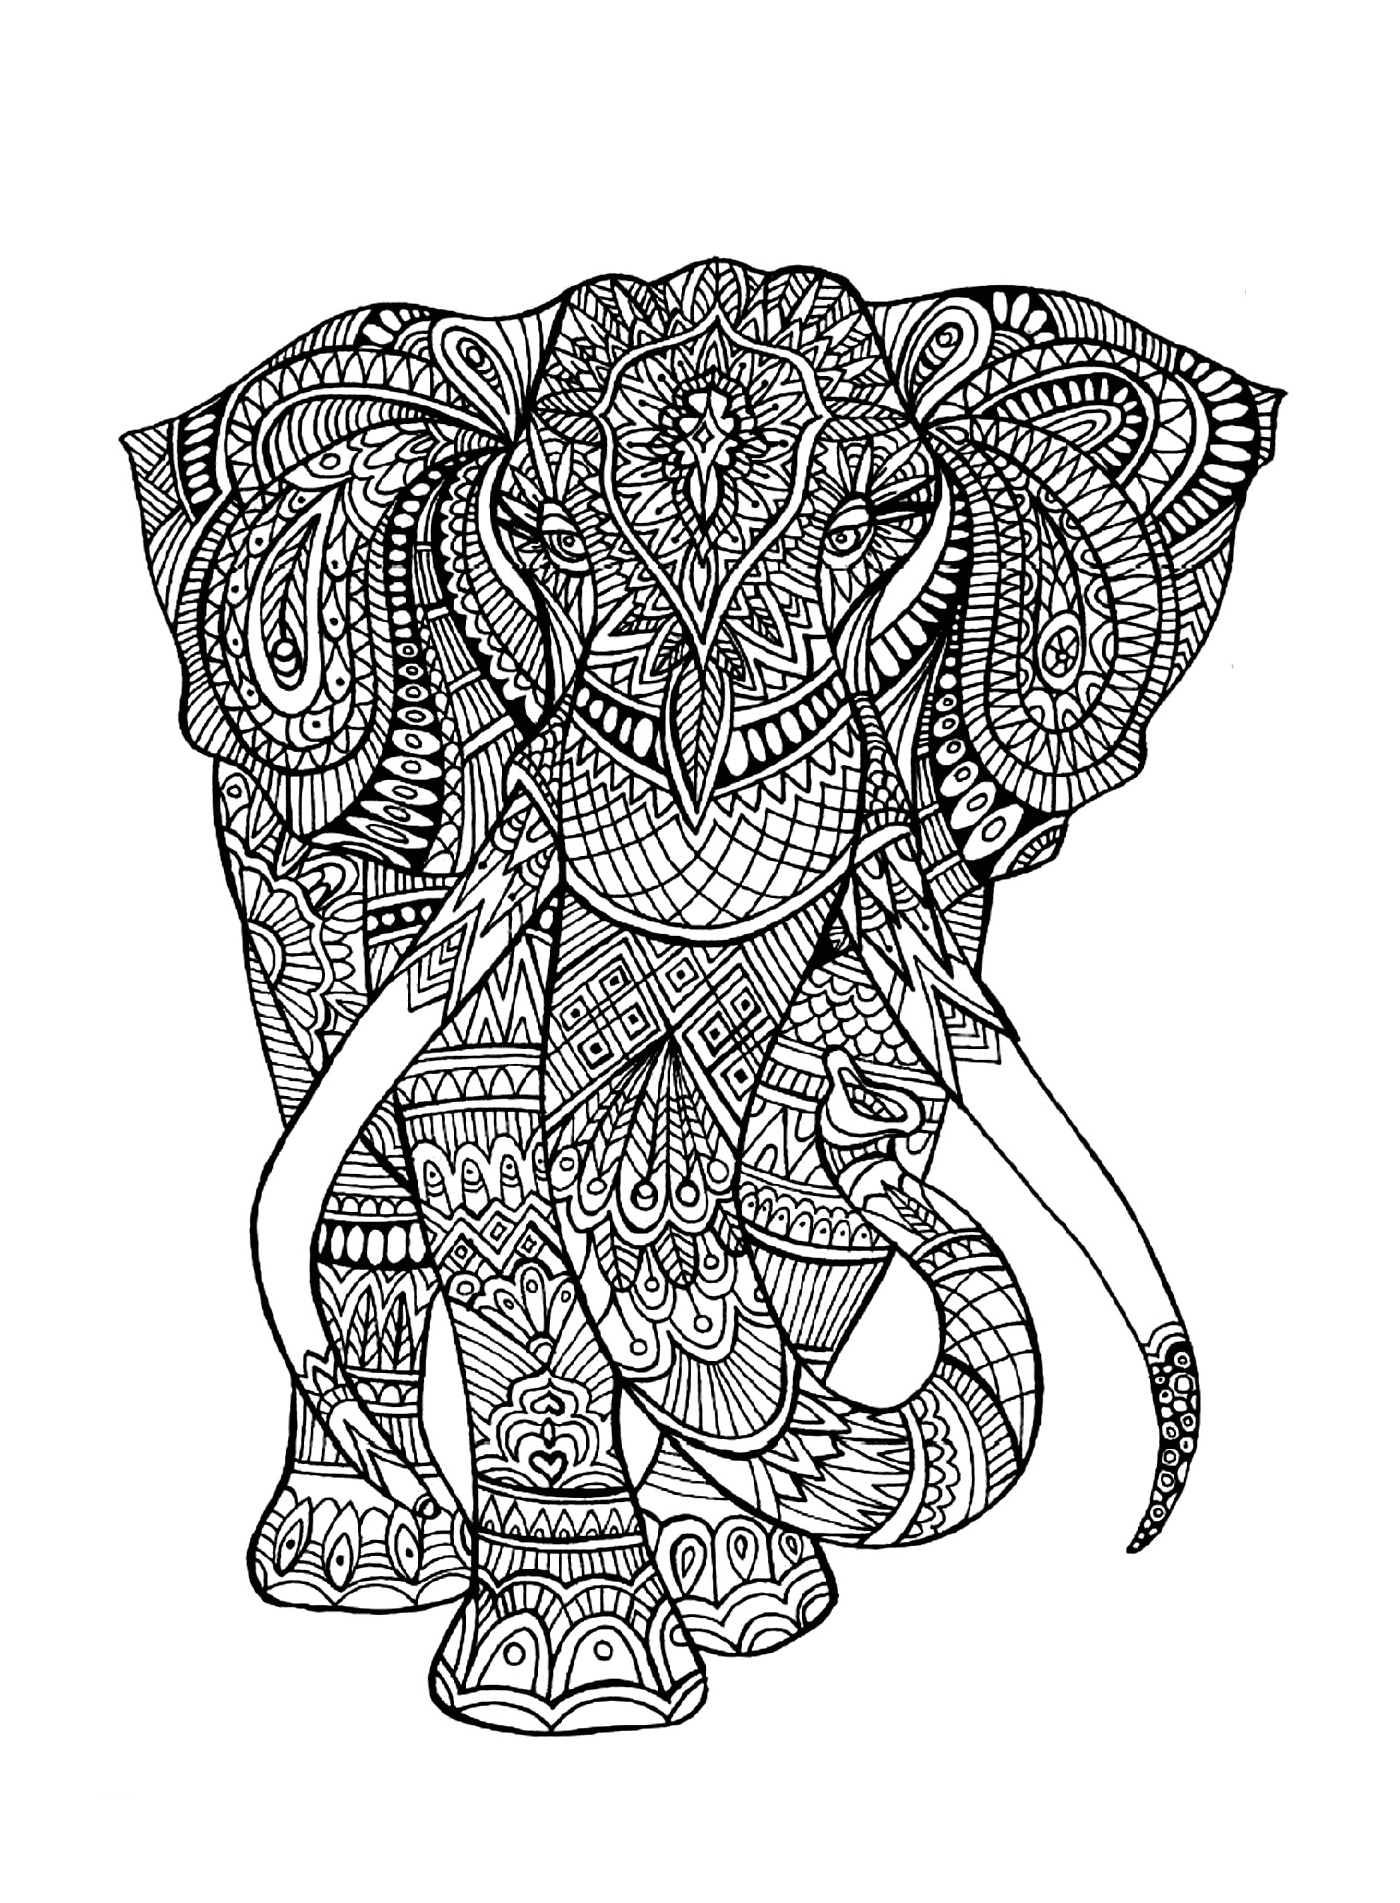  Un elefante con patrones complejos en su cuerpo 